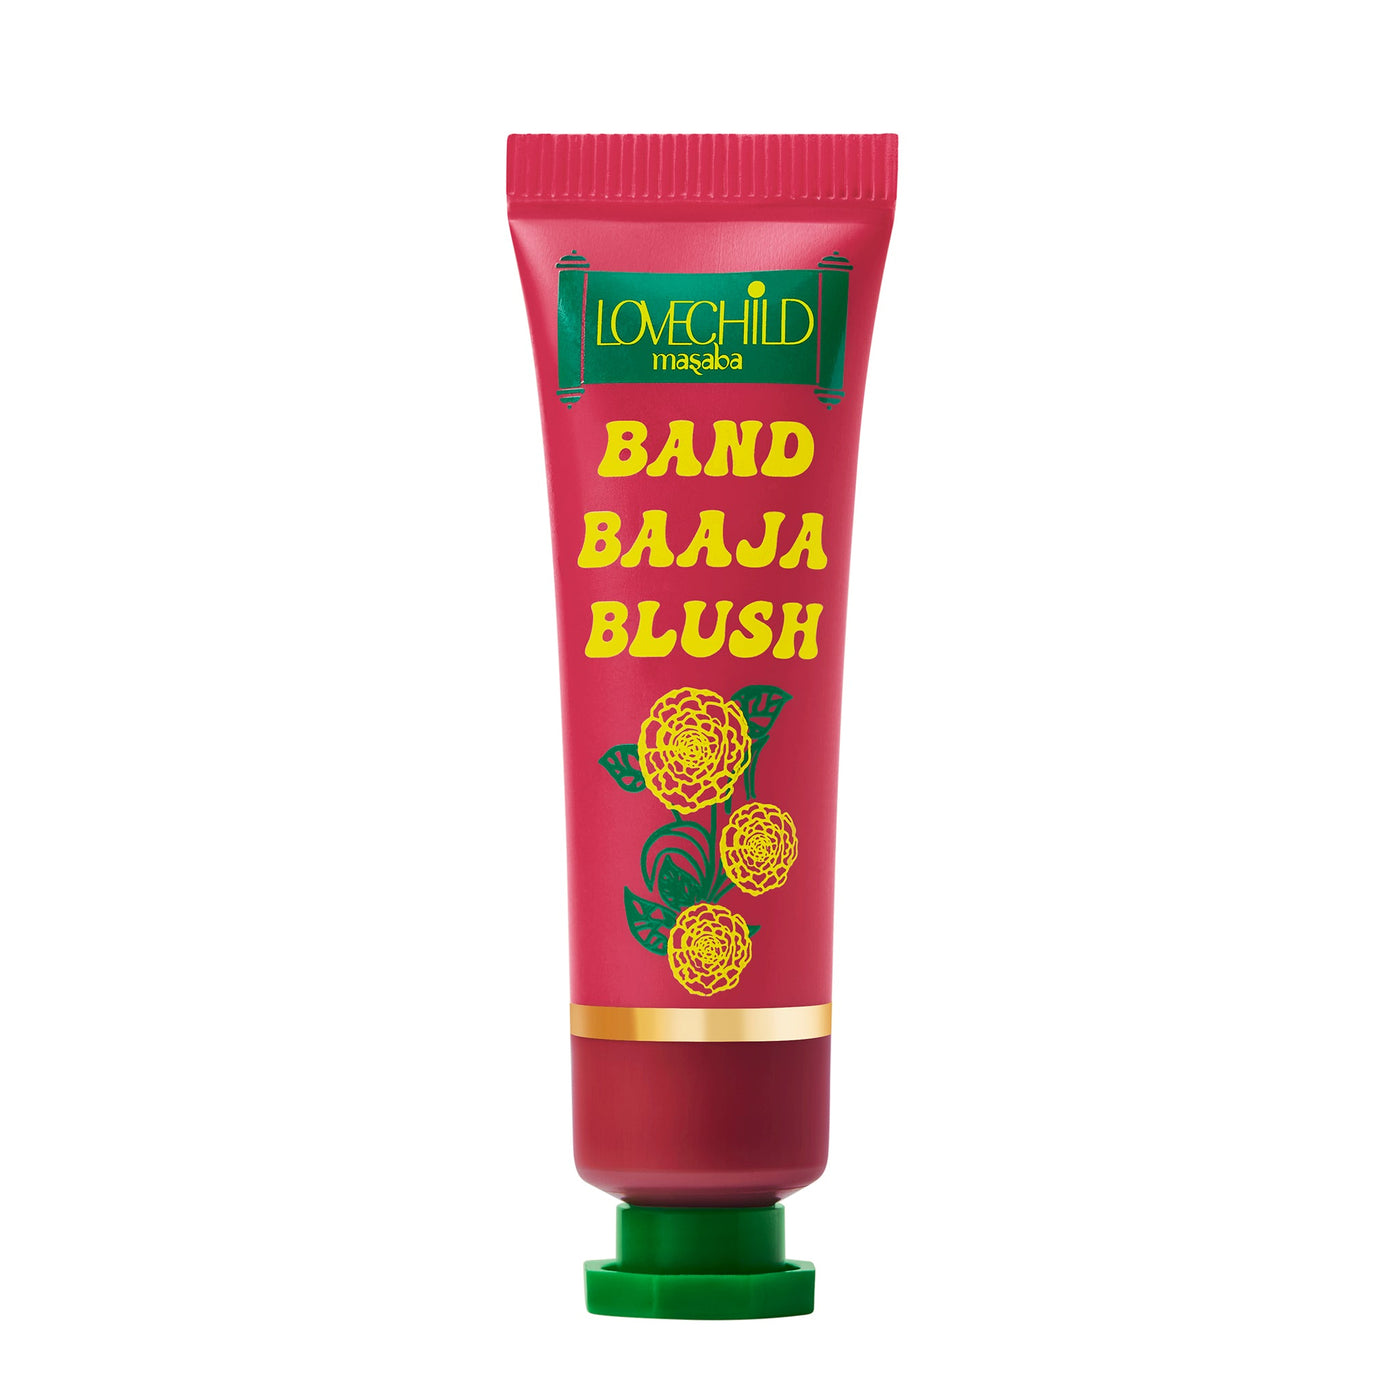 Lal Lal Land Red Creme Blush - 'Band Baaja Blush'